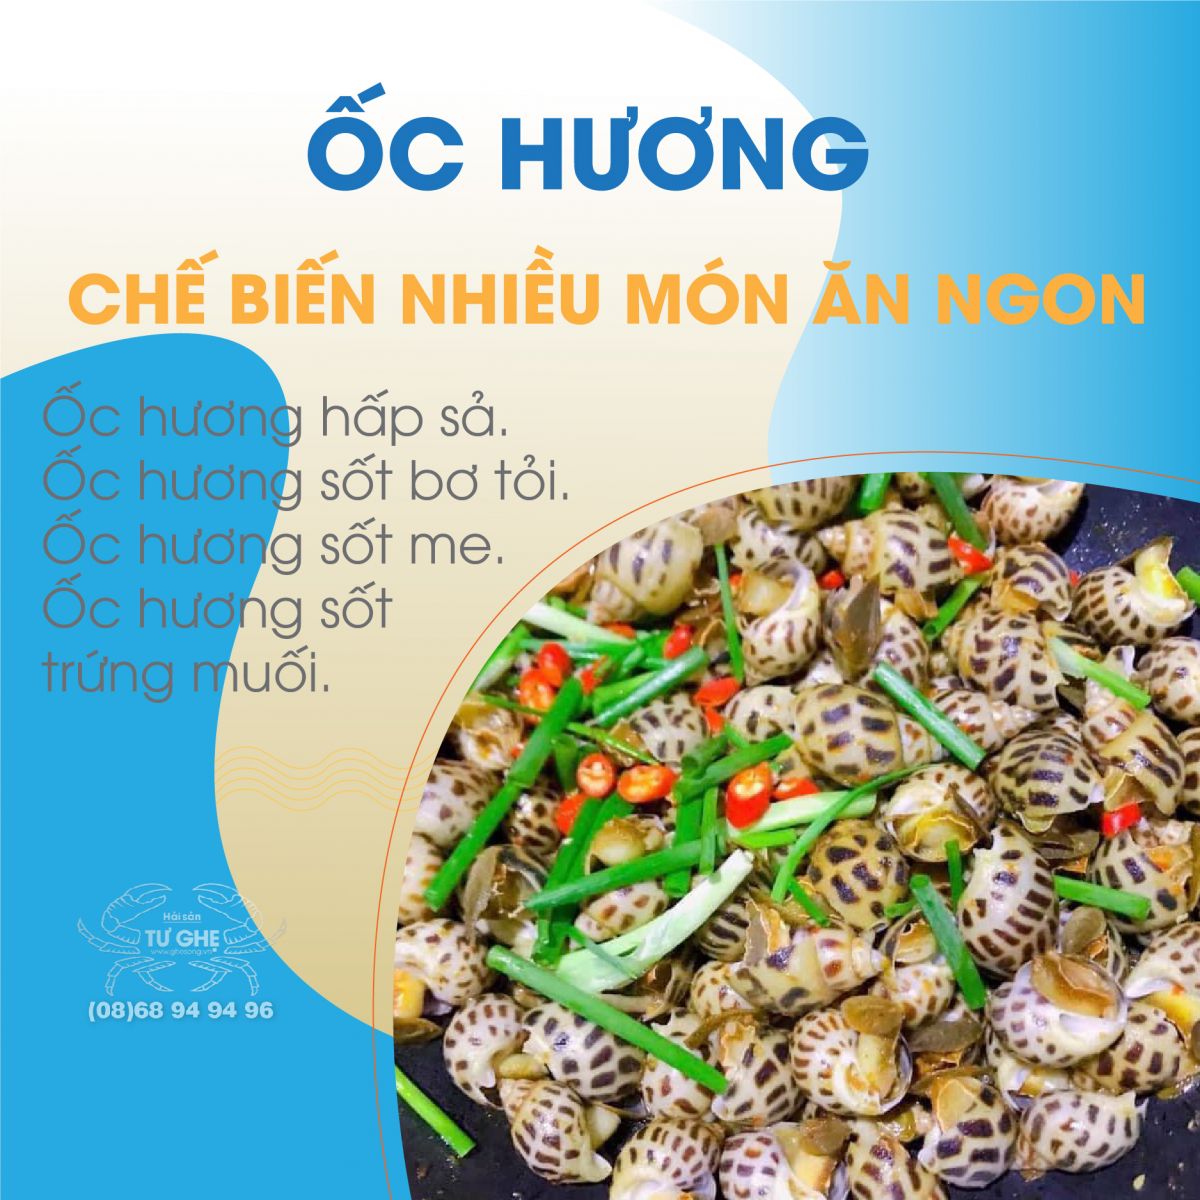 oc-huong-che-bien-nhieu-mon-an-ngon